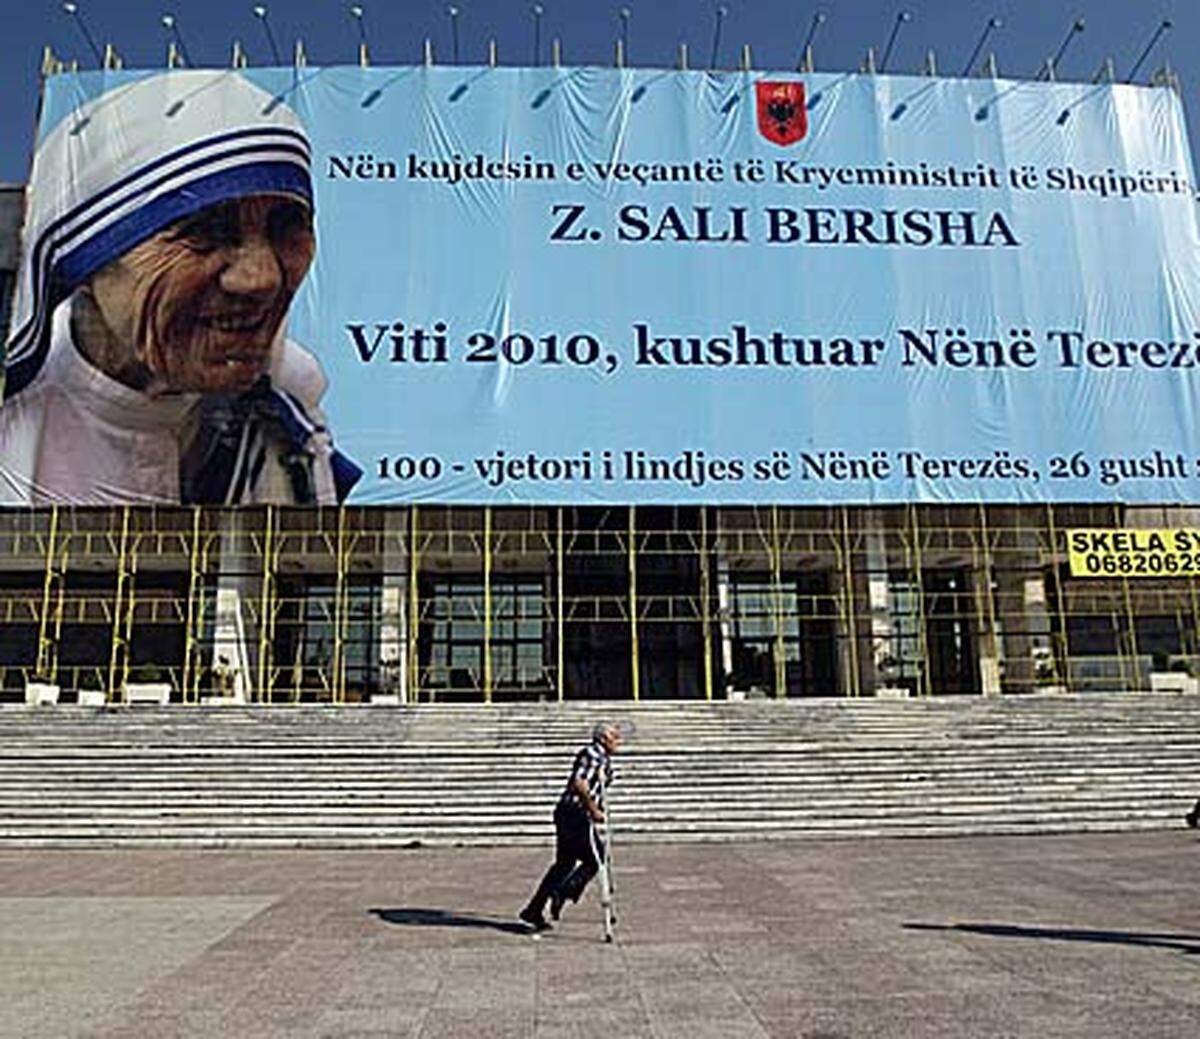 Noch heute wird Mutter Teresa von den Albanern besonders verehrt, obwohl die meisten Muslime sind. So ist der Flughafen der albanischen Hauptstadt Tirana nach ihr benannt. In Skopje wurde im Vorjahr ein "Mutter-Teresa-Haus" eröffnet.